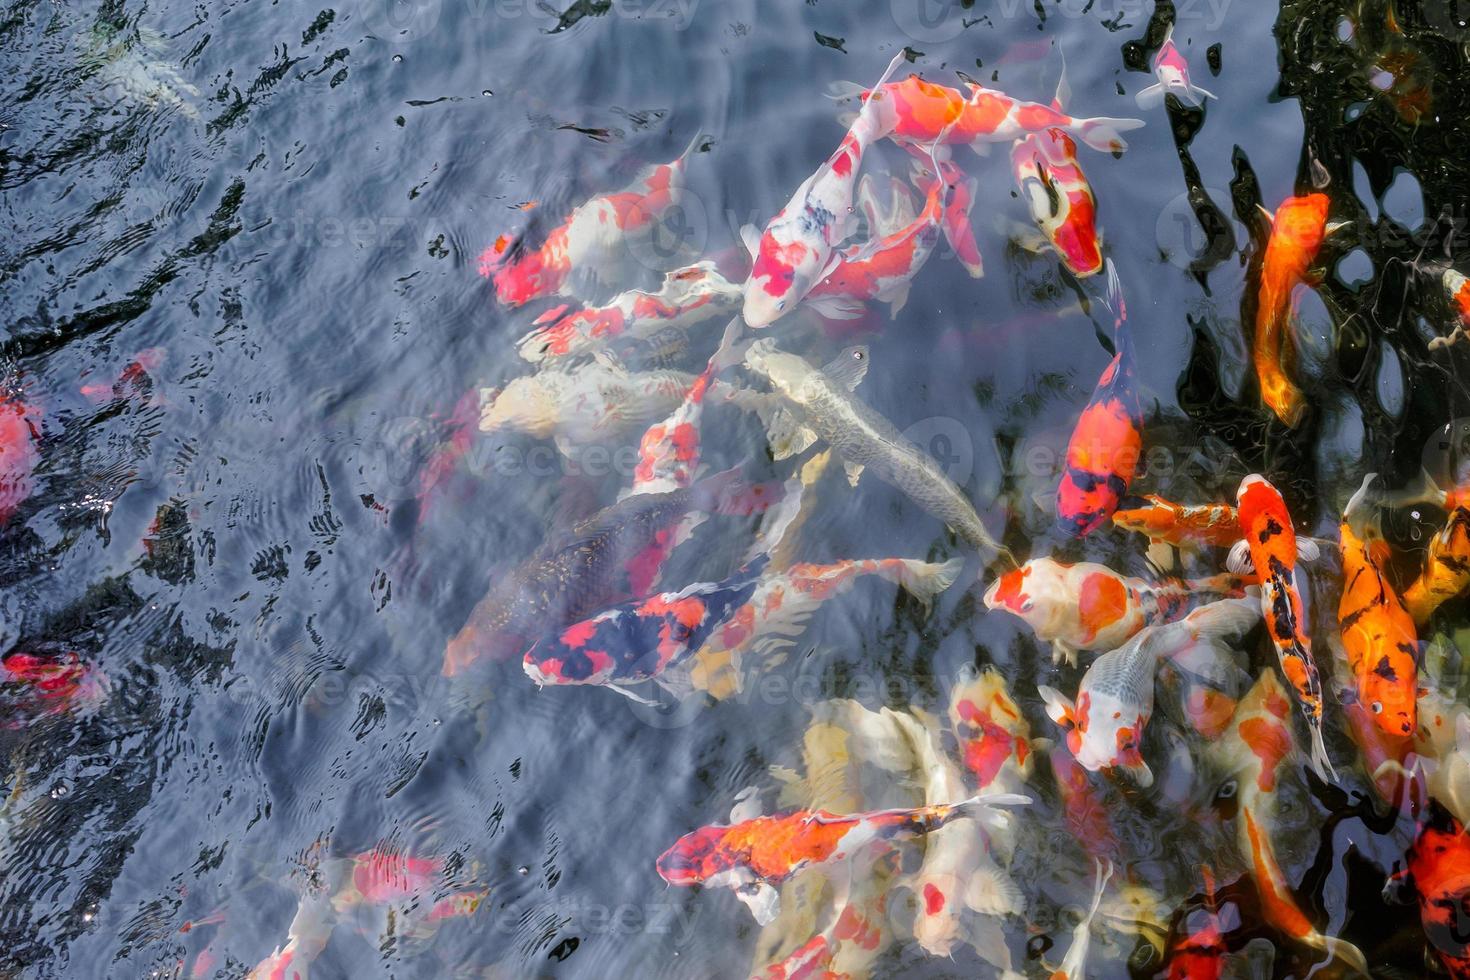 hermosos peces koi en el estanque foto